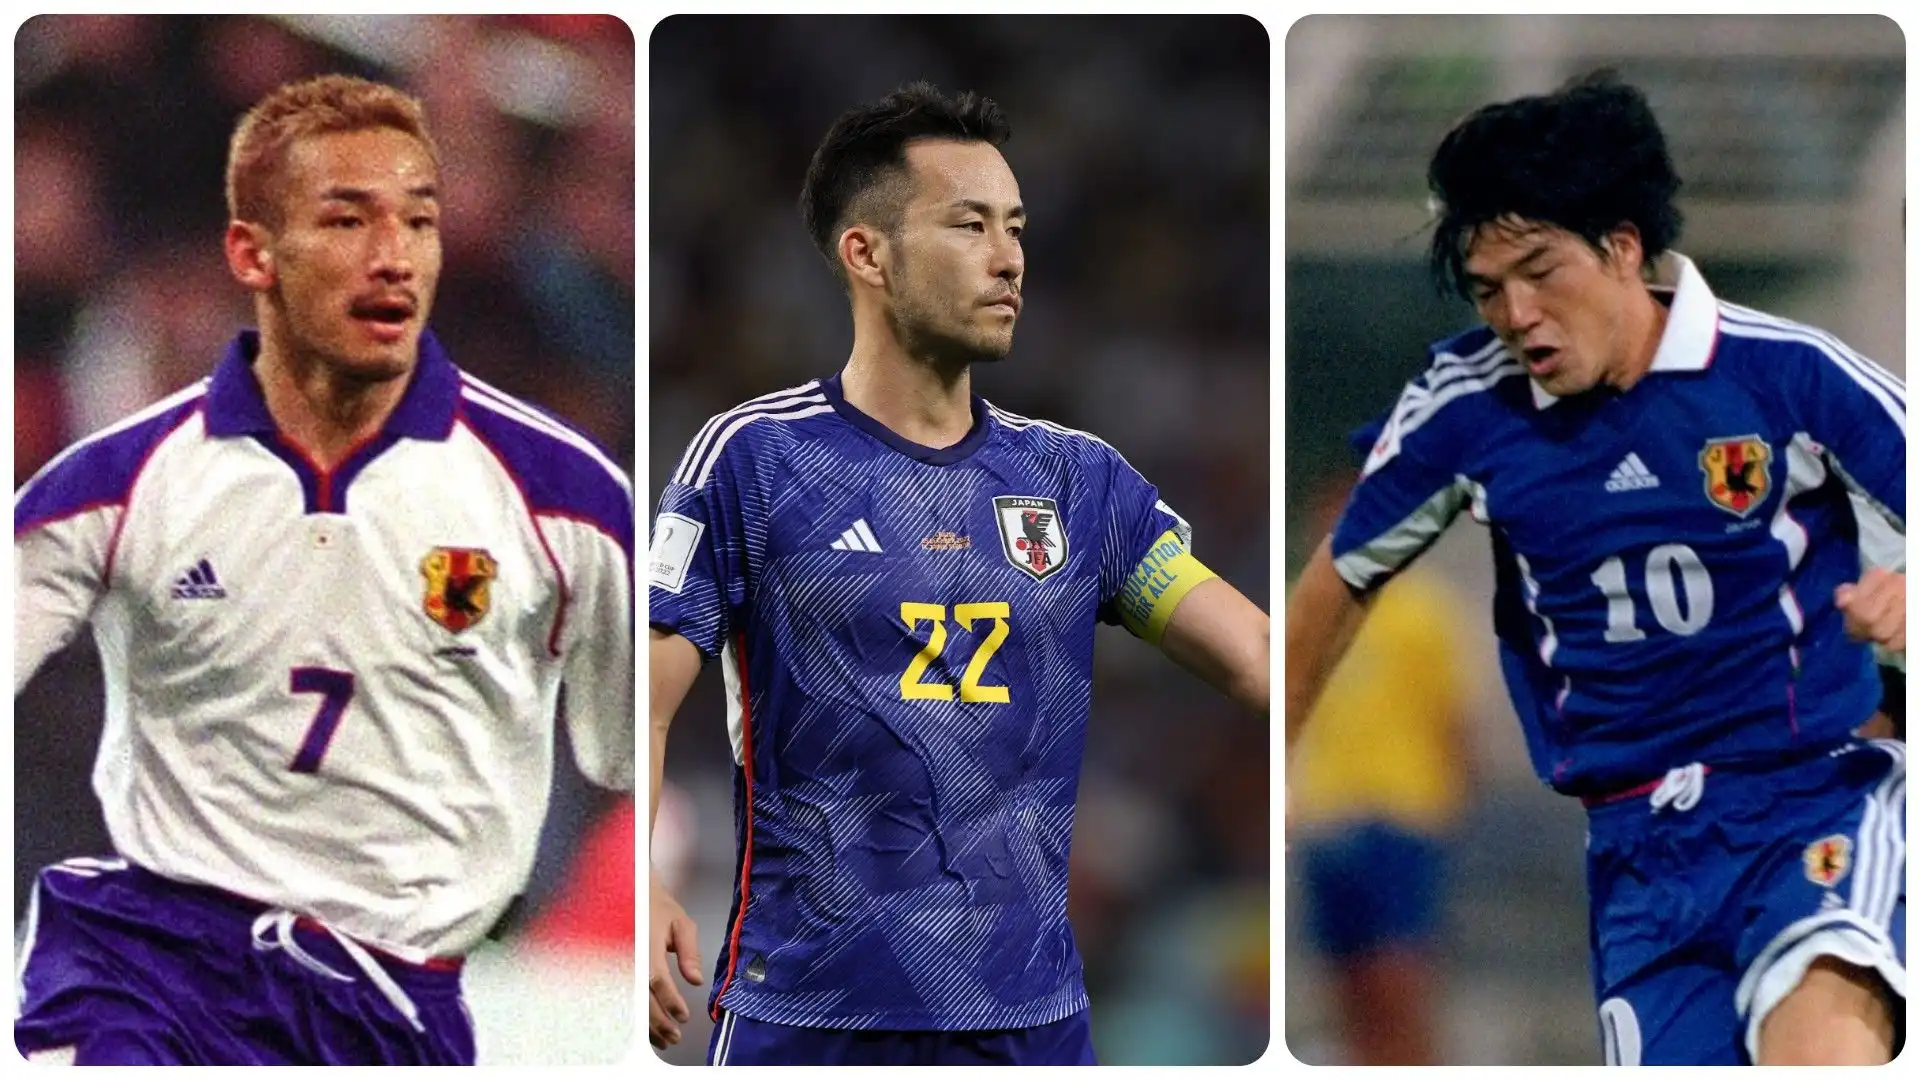 I migliori calciatori giapponesi della storia: la risposta dell'intelligenza artificiale